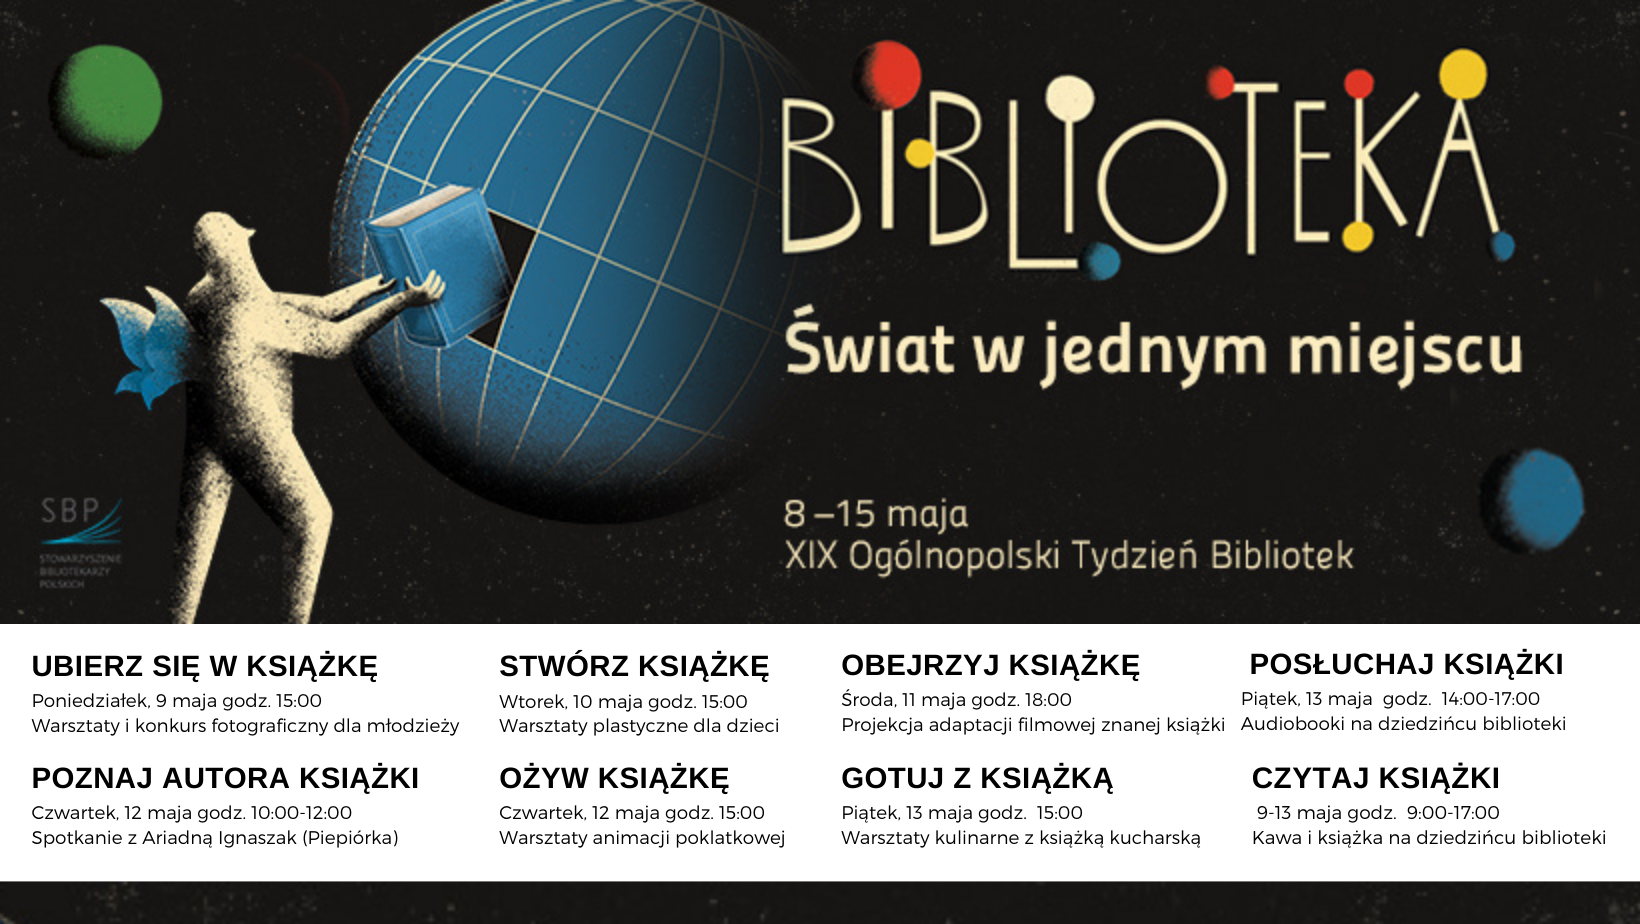 Trwa XIX Ogólnopolski Tydzień Bibliotek. Biblioteka w Stężycy zaprasza do udziału w organizowanych z tej okazji wydarzeniach